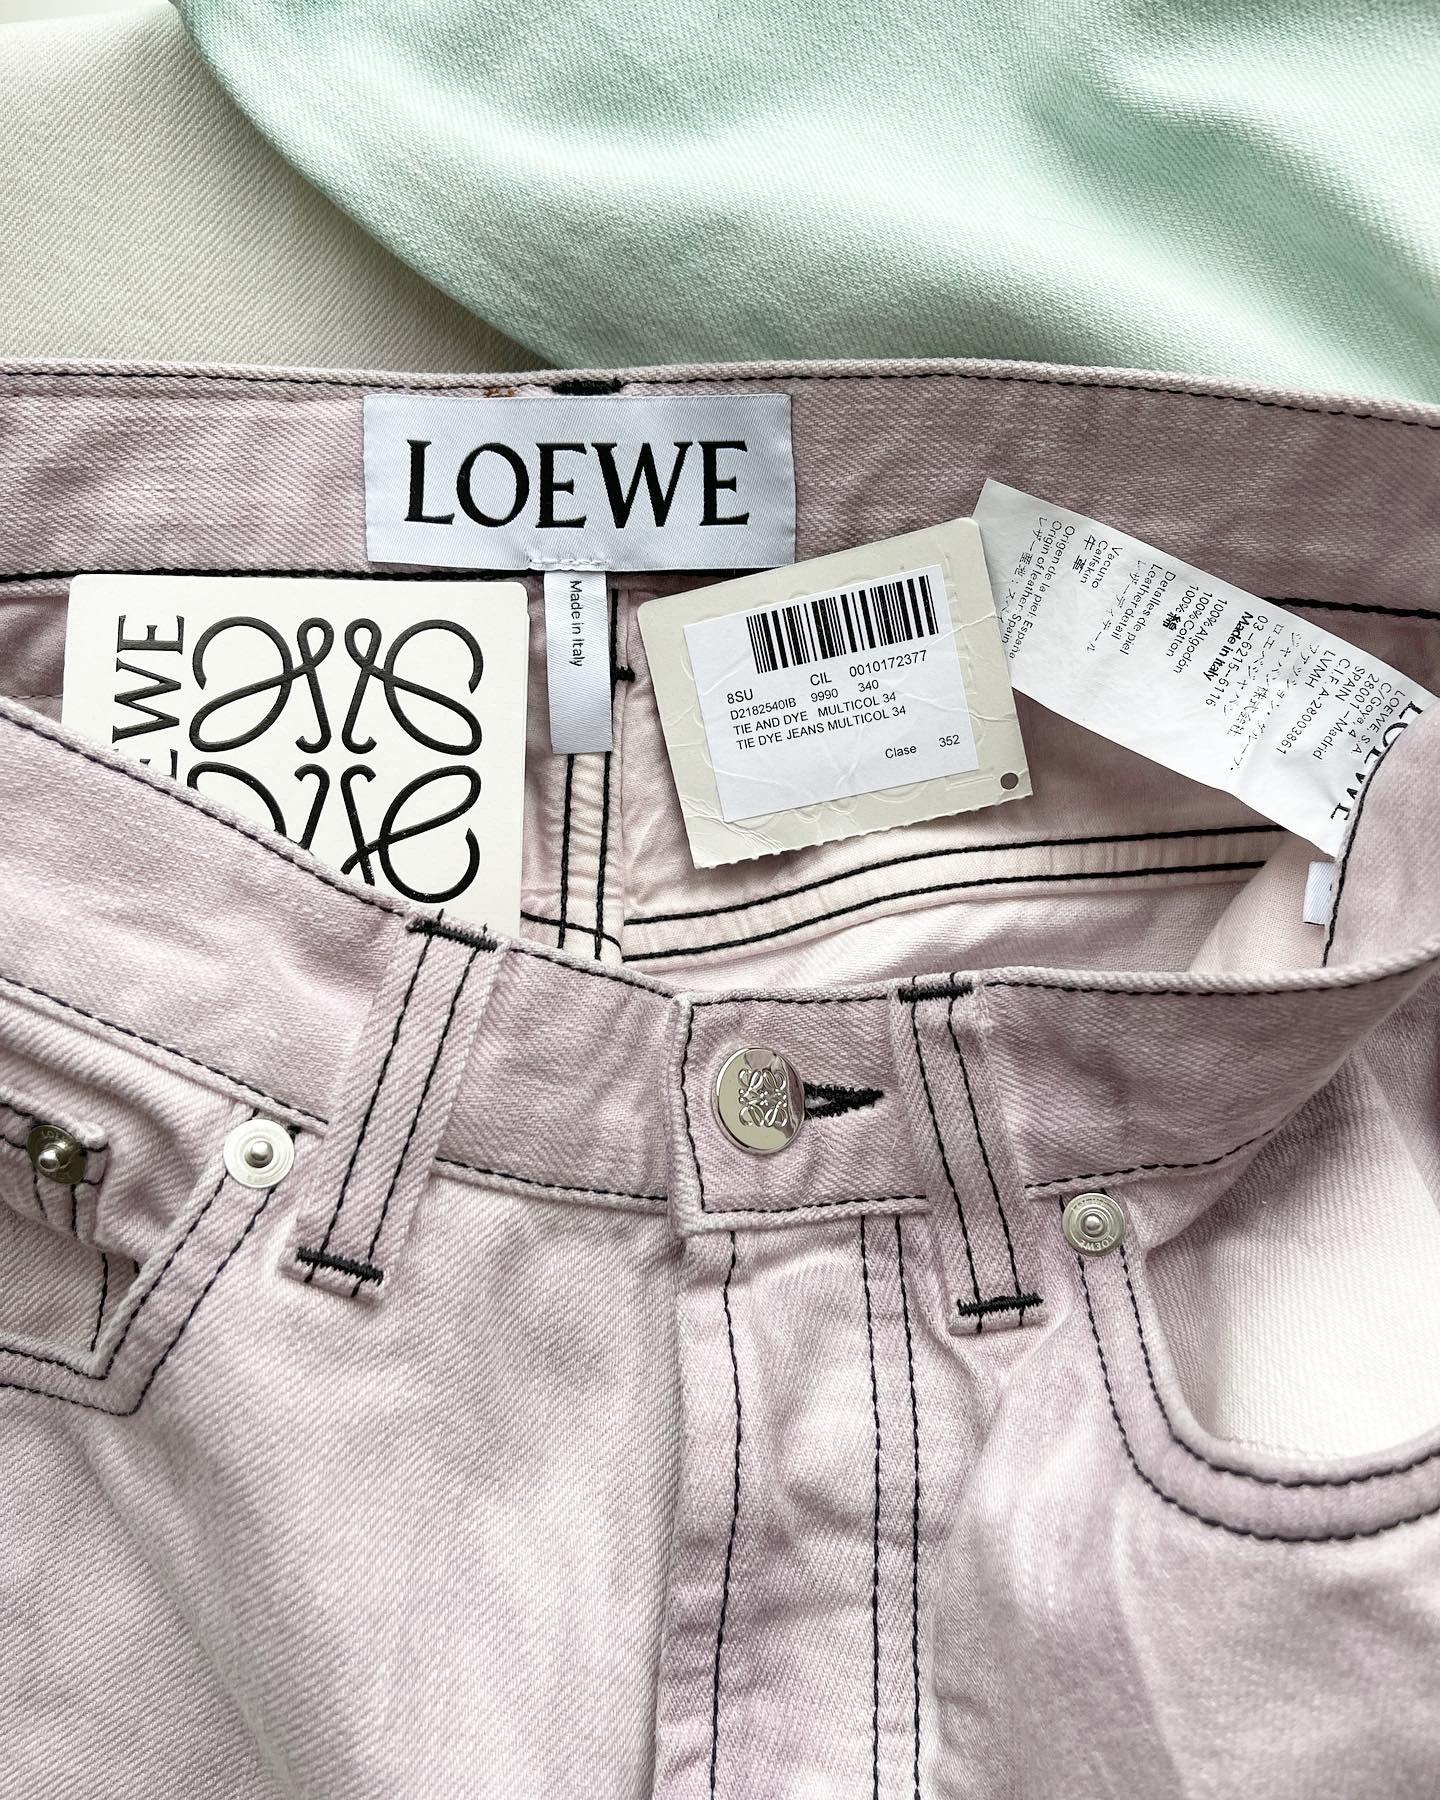 LOEWE - LOEWE Jeans - AVVIIVVA.COM